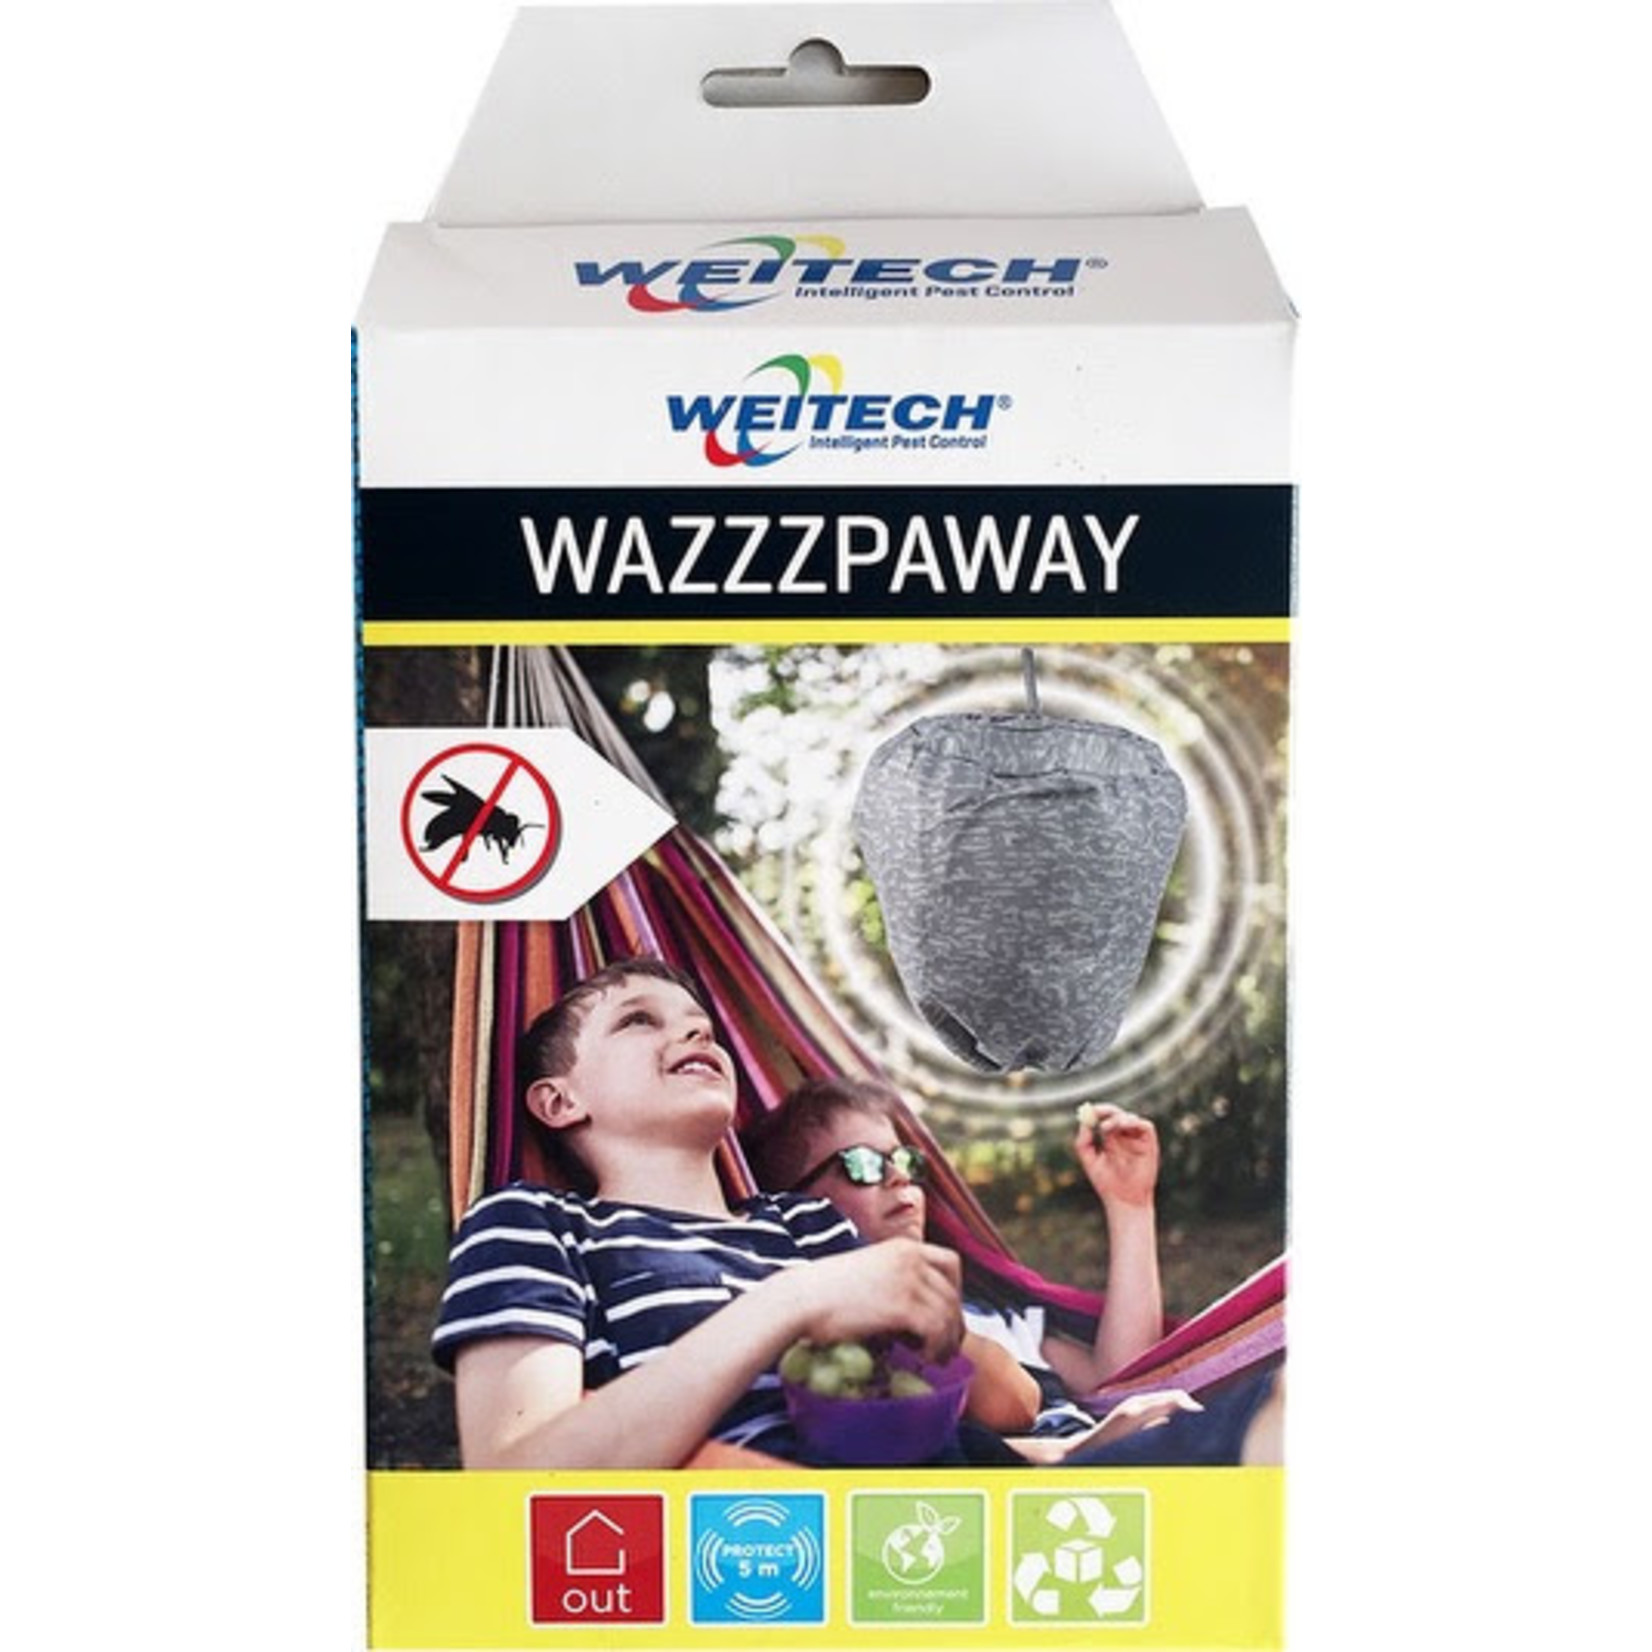 Weitech WazzzpAway tegen wespennesten